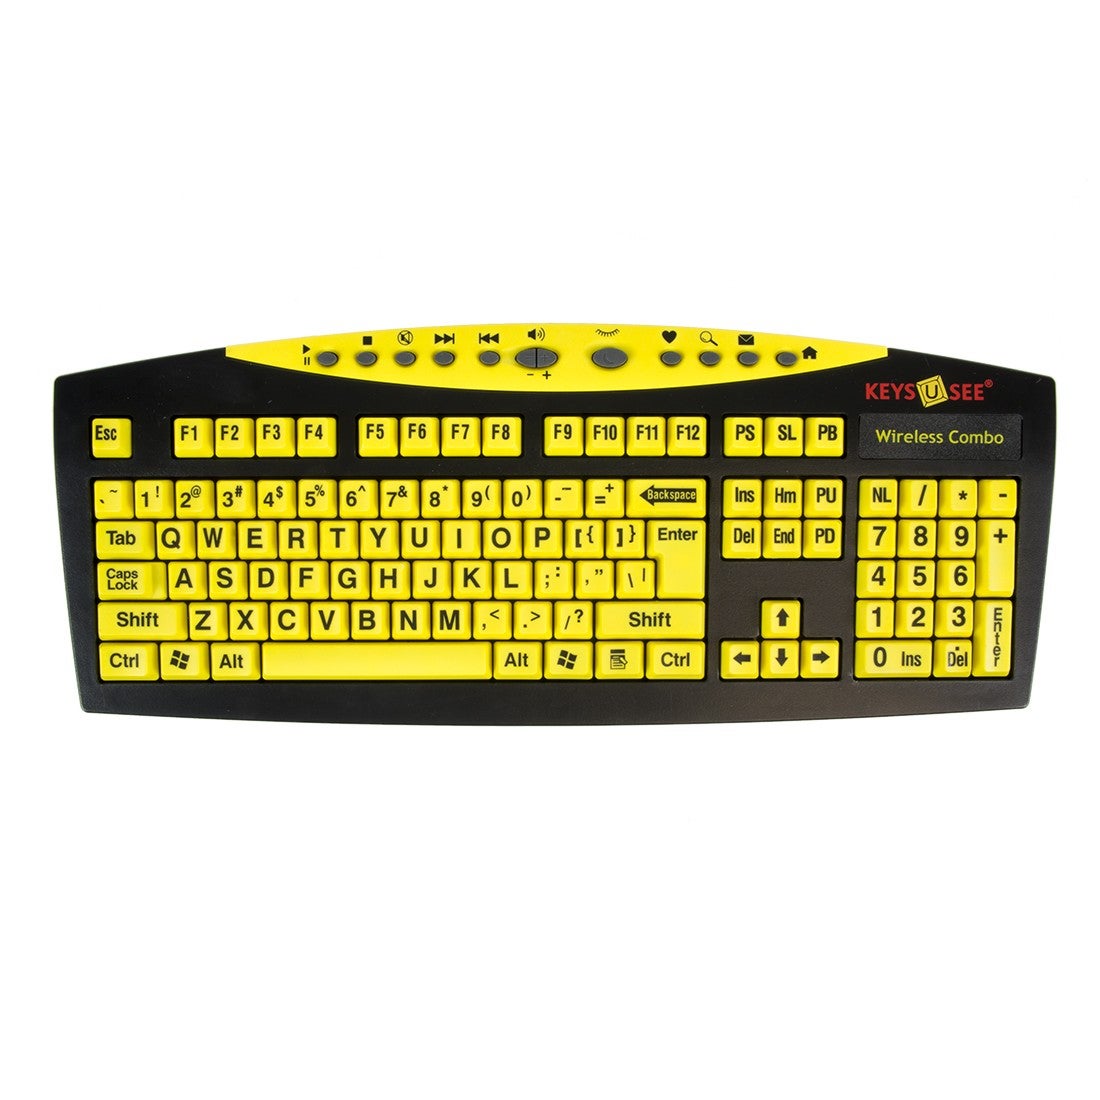 Ablenet Keys U See Wireless Keyboard/Mouse combo